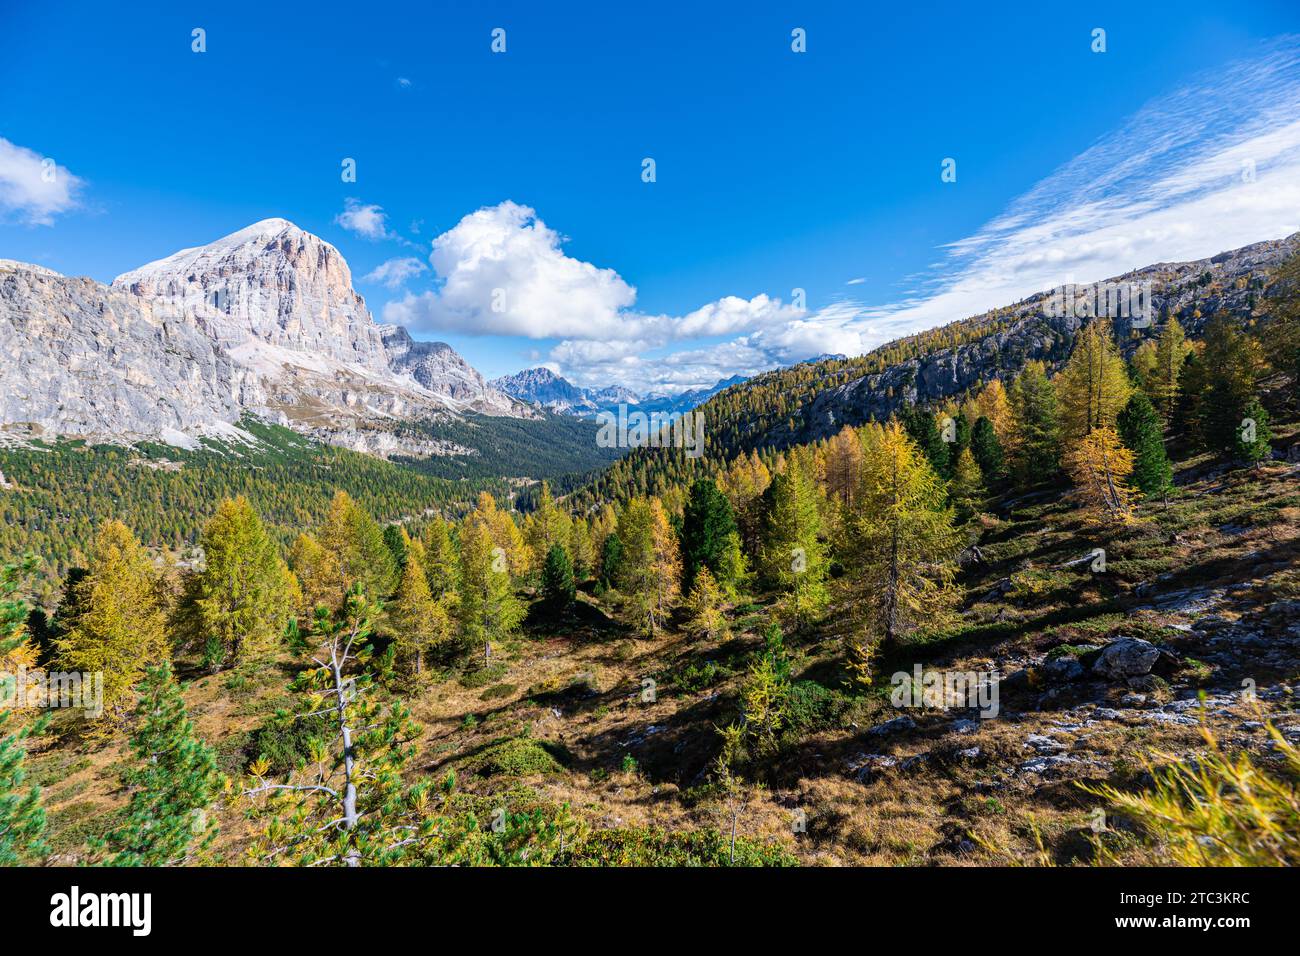 Vue panoramique sur une vallée de montagne avec des mélèzes jaunes Banque D'Images